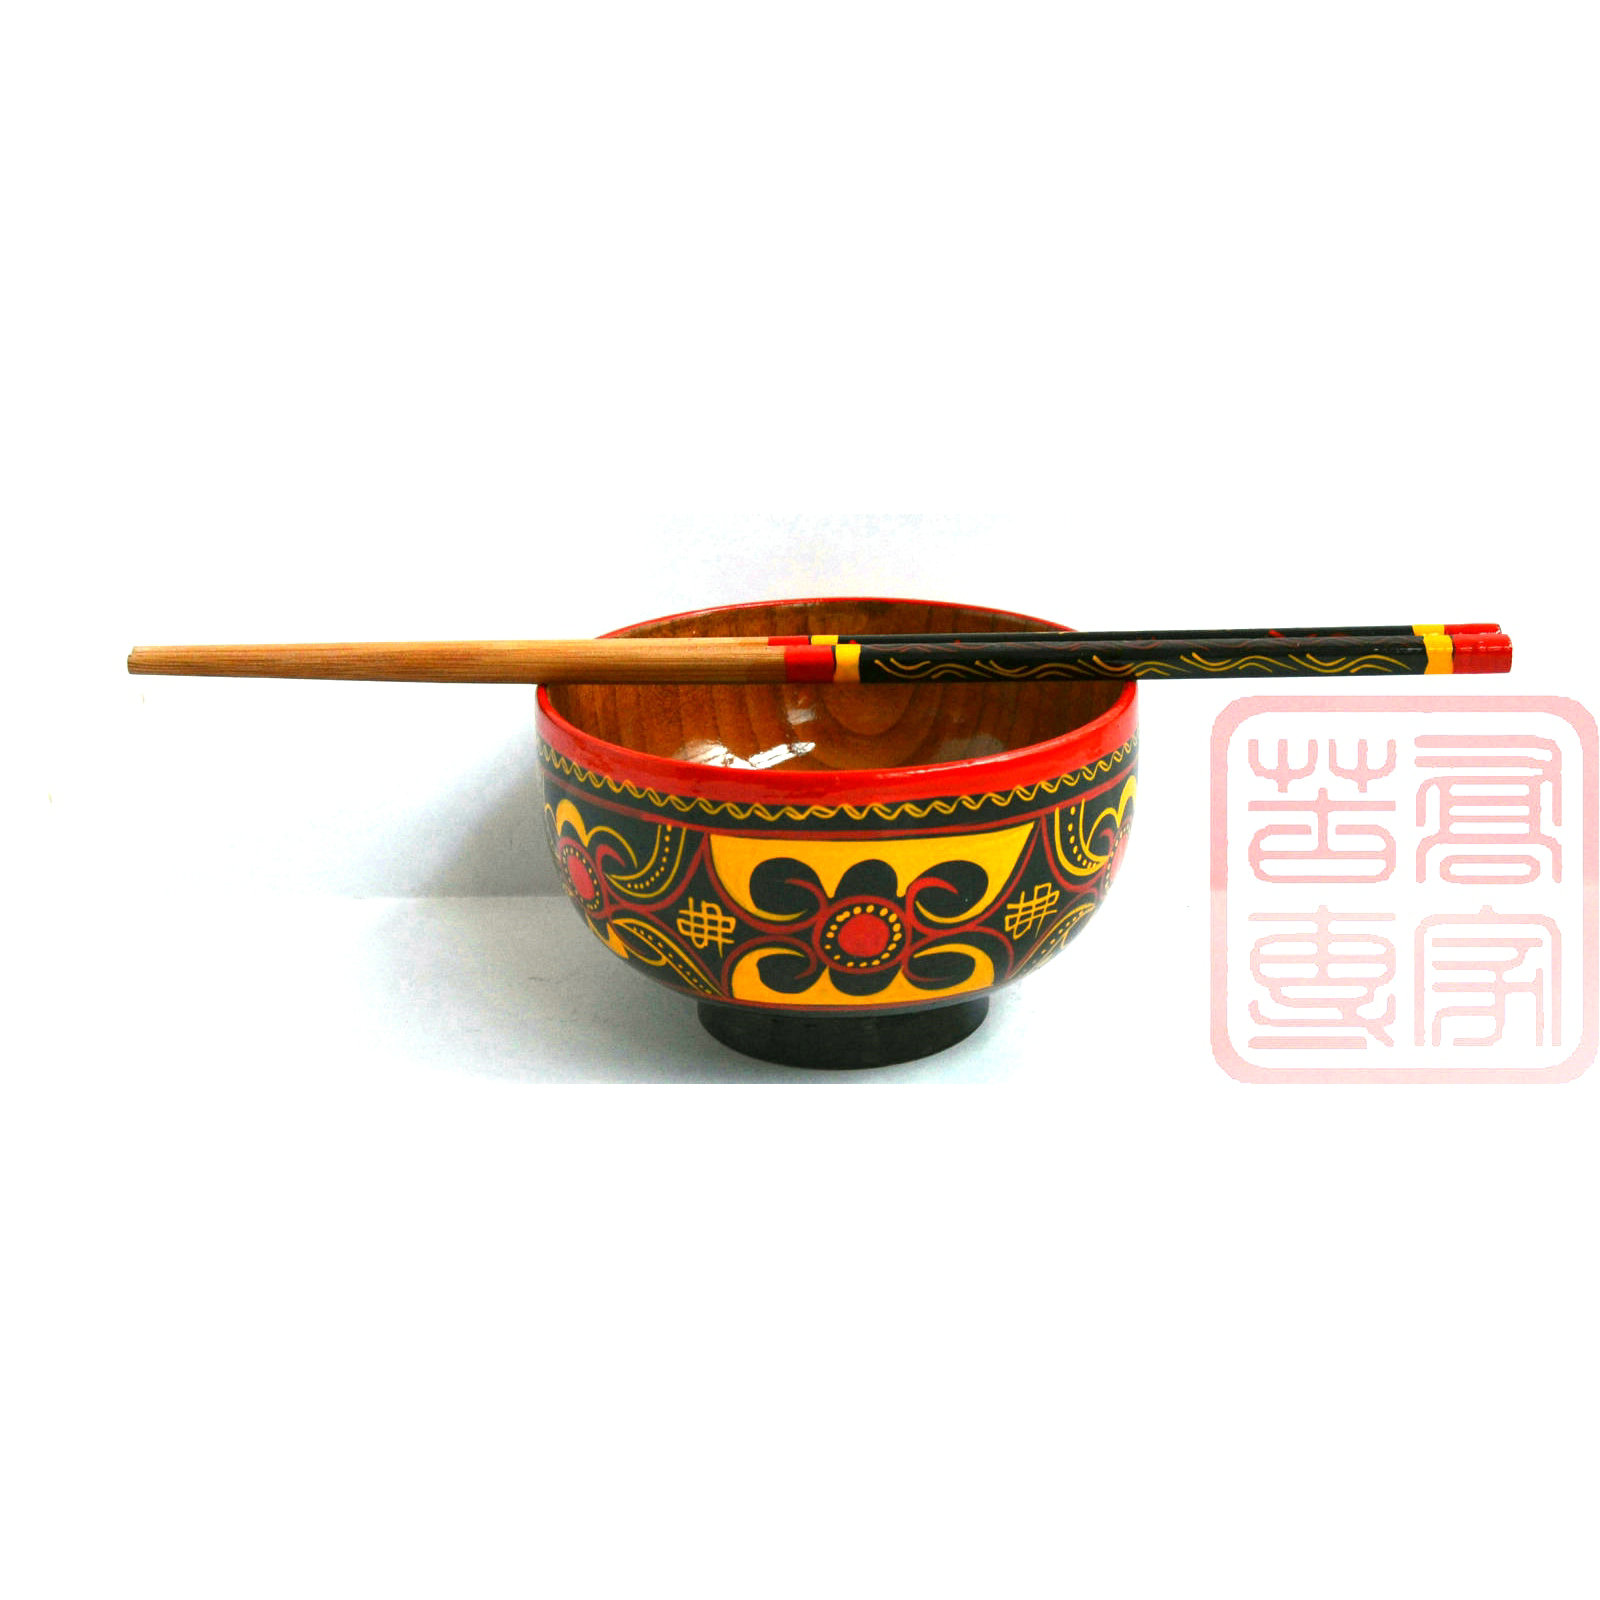 四川大凉山彝族碗筷民间漆器彩绘纯手工艺品碗筷一套树脂民族碗筷